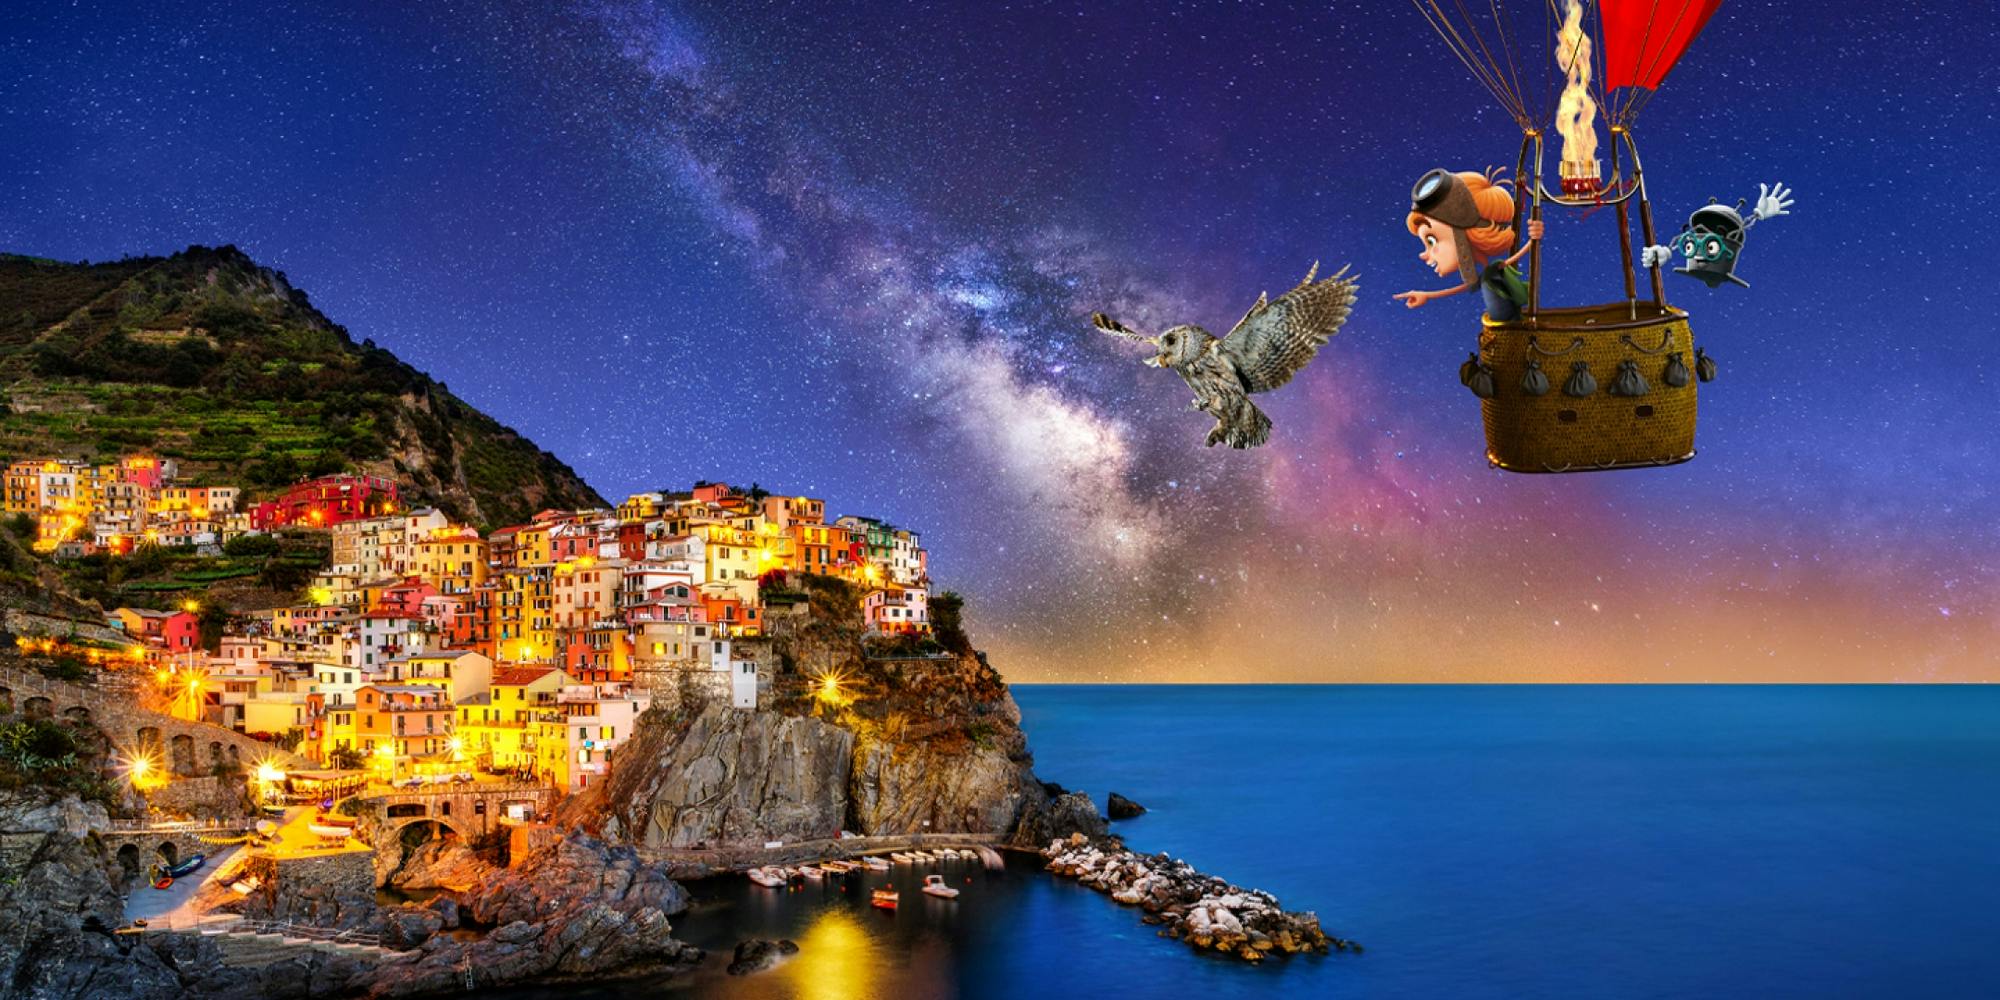 Oskar und Bo fliegen in der Nacht mit einem Heißluftballon und treffen eine Eule. Sie blicken auf das beleuchtete Küstendorf Cinque Terre. © goodmatters